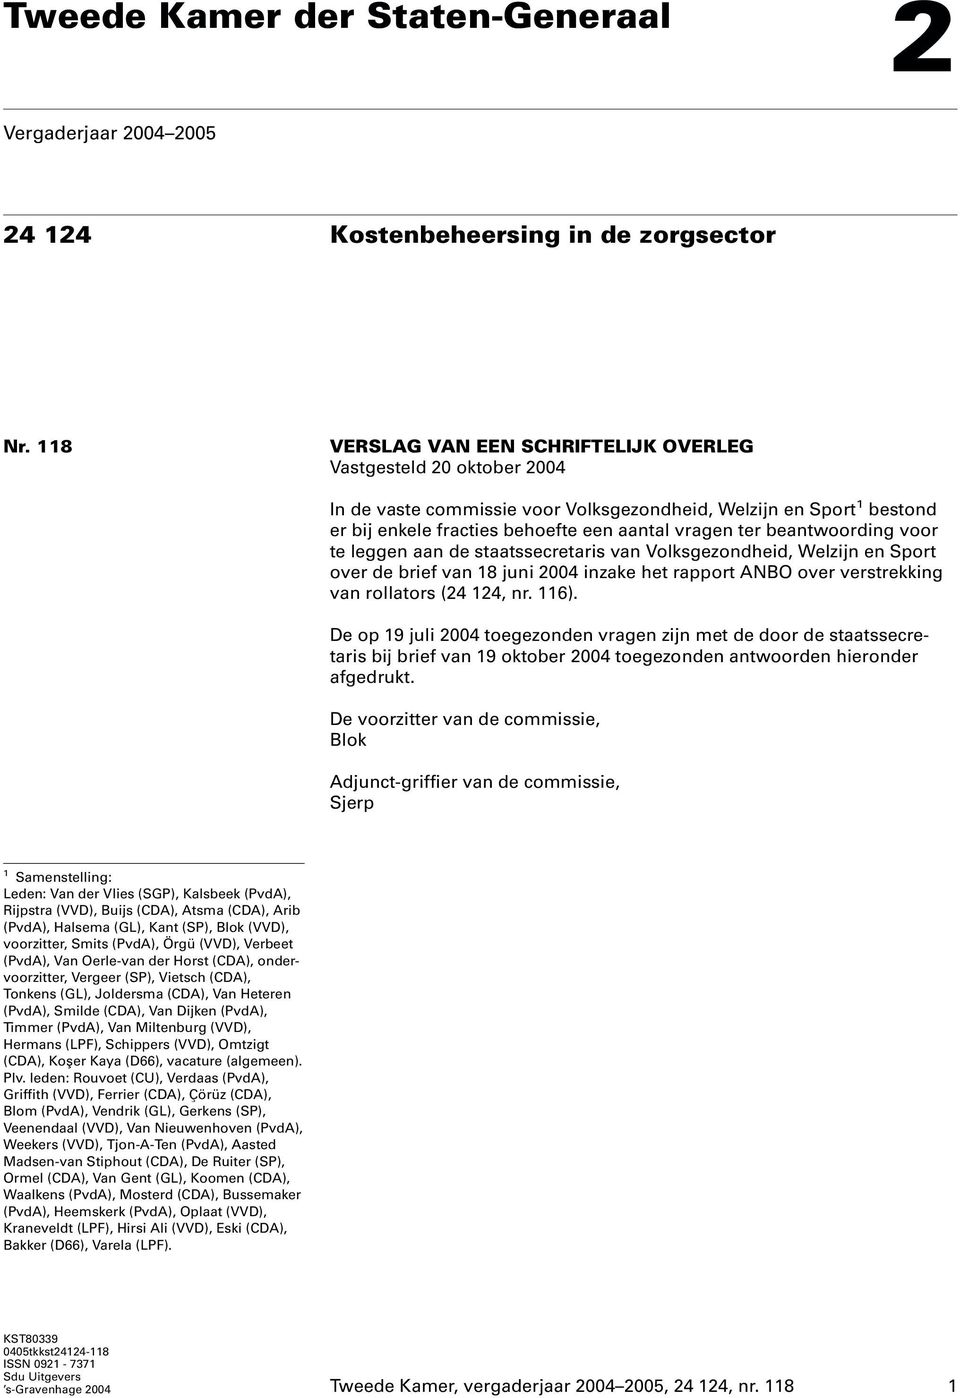 beantwoording voor te leggen aan de staatssecretaris van Volksgezondheid, Welzijn en Sport over de brief van 18juni 2004 inzake het rapport ANBO over verstrekking van rollators (24 124, nr. 116).